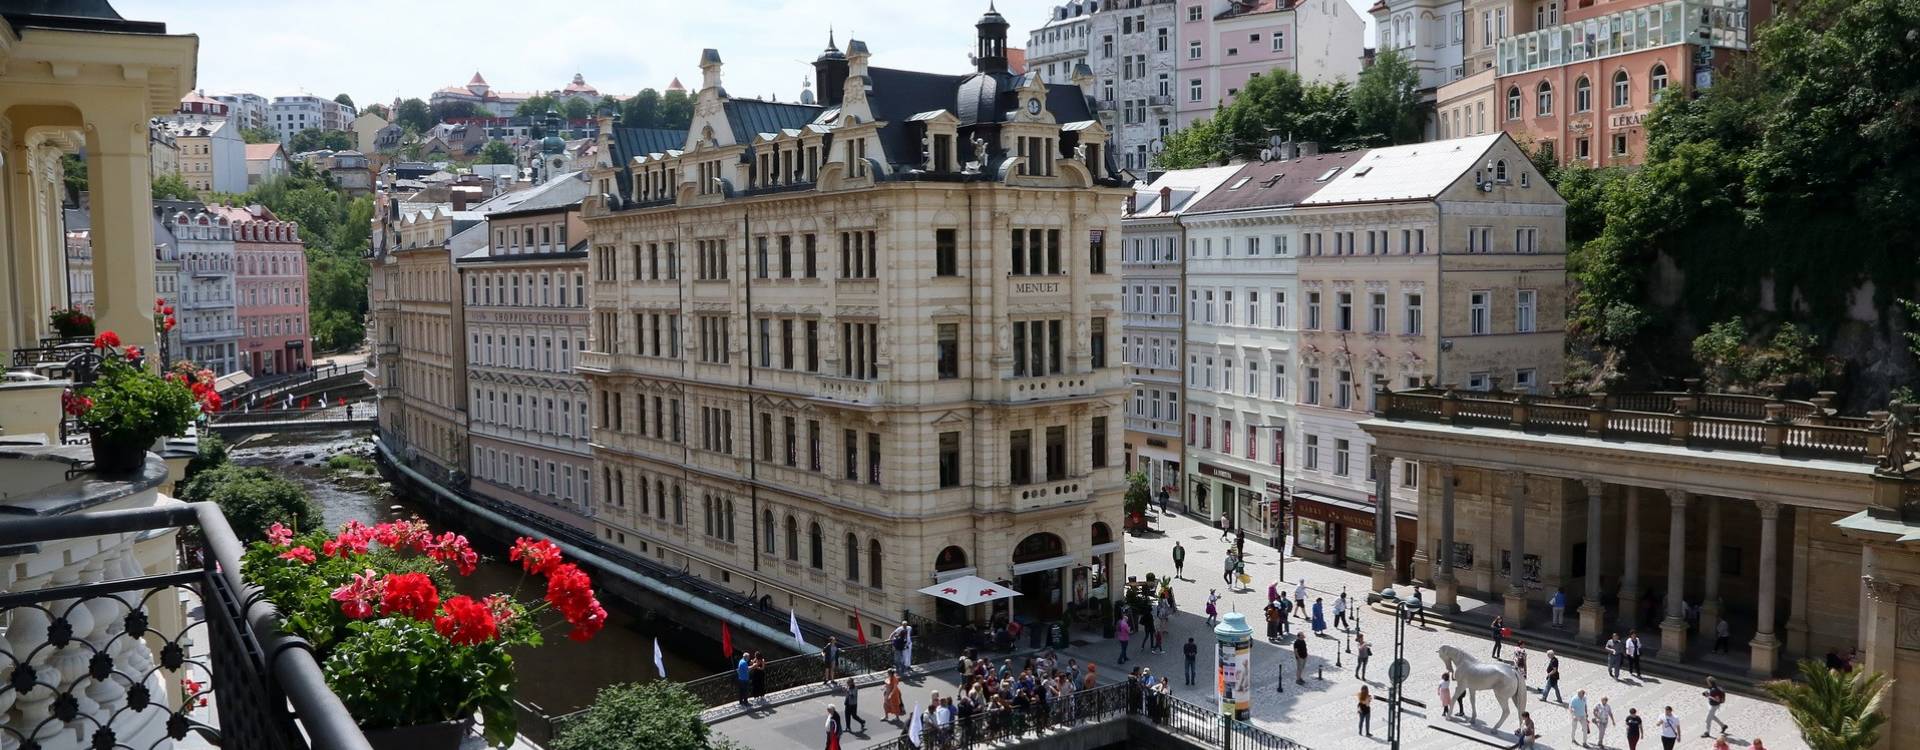 ASTORIA Hotel & Medical Spa - Poznávání Karlových Varů s polopenzí pro dva